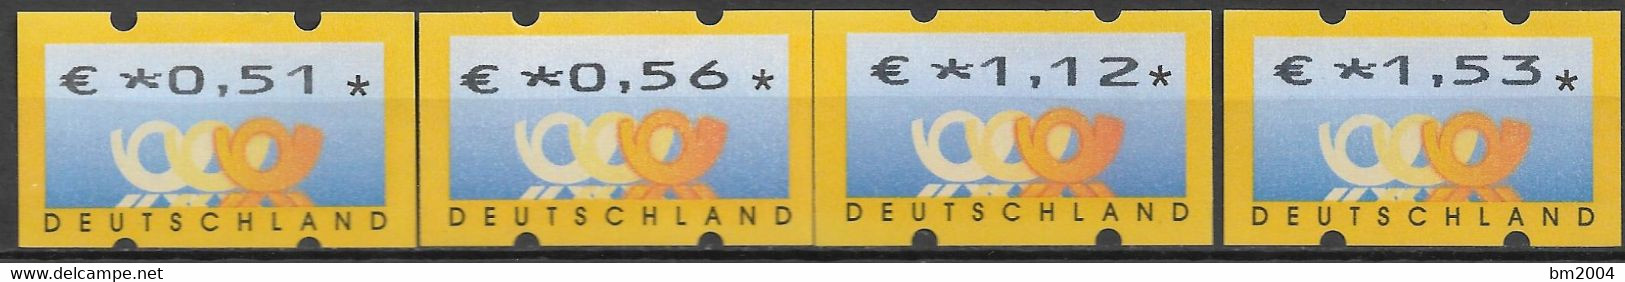 2002 Deutschland Germany  Mi. 4PS 1  **MNH Automatenmarke  EUR 0,51 / 0,56 / 1,12 / 1,53 - Ungebraucht